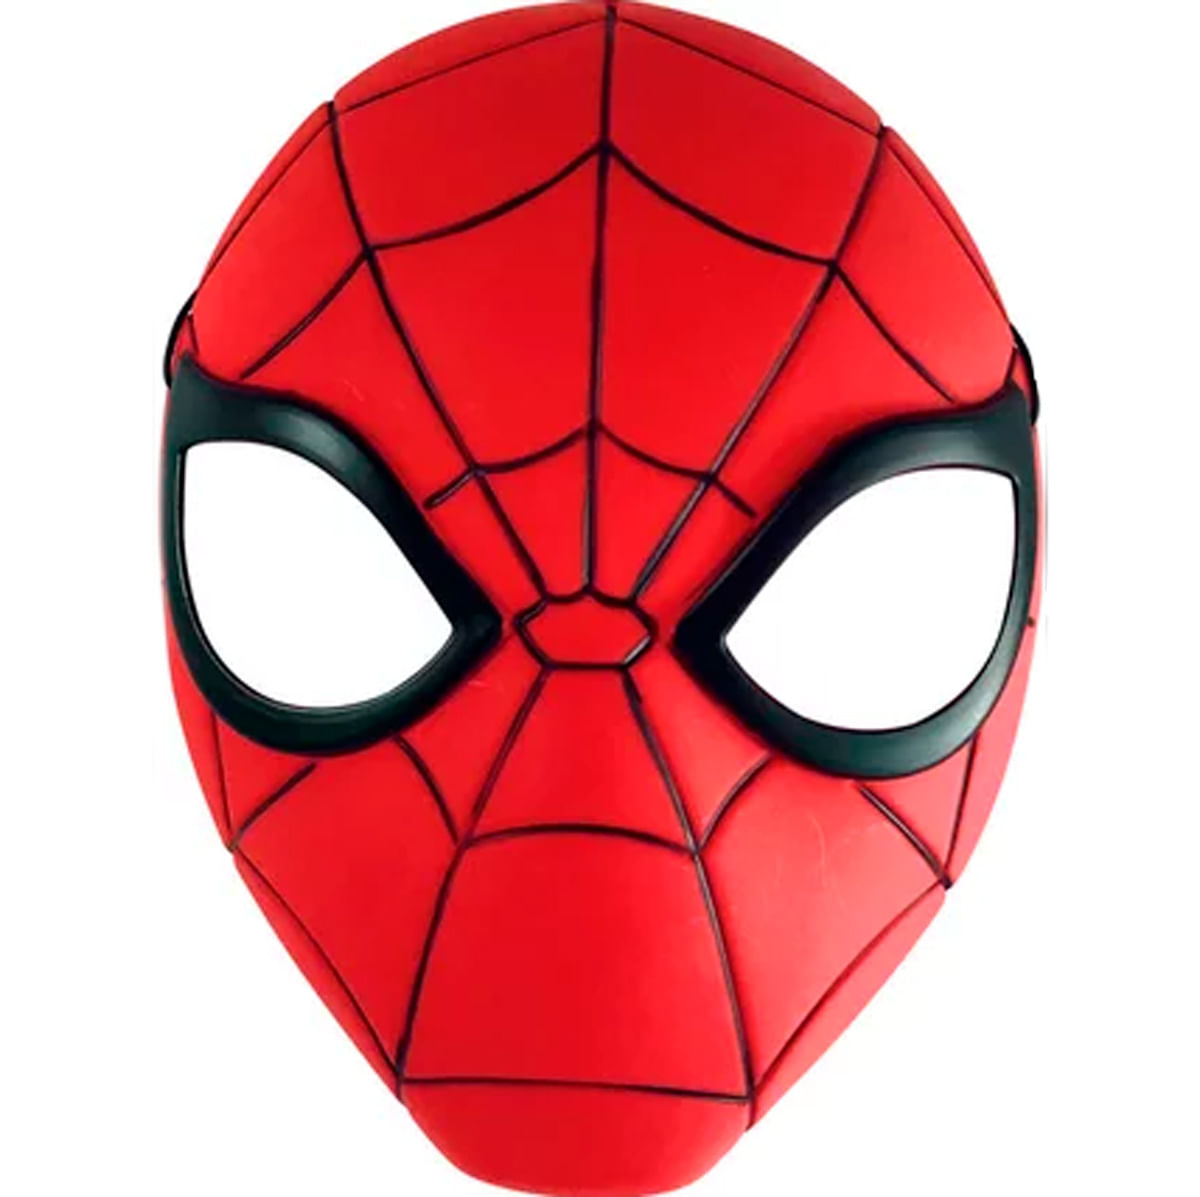 https://drimjuguetes.vtexassets.com/arquivos/ids/841936/Spiderman-Mascara.jpg?v=638036595979400000